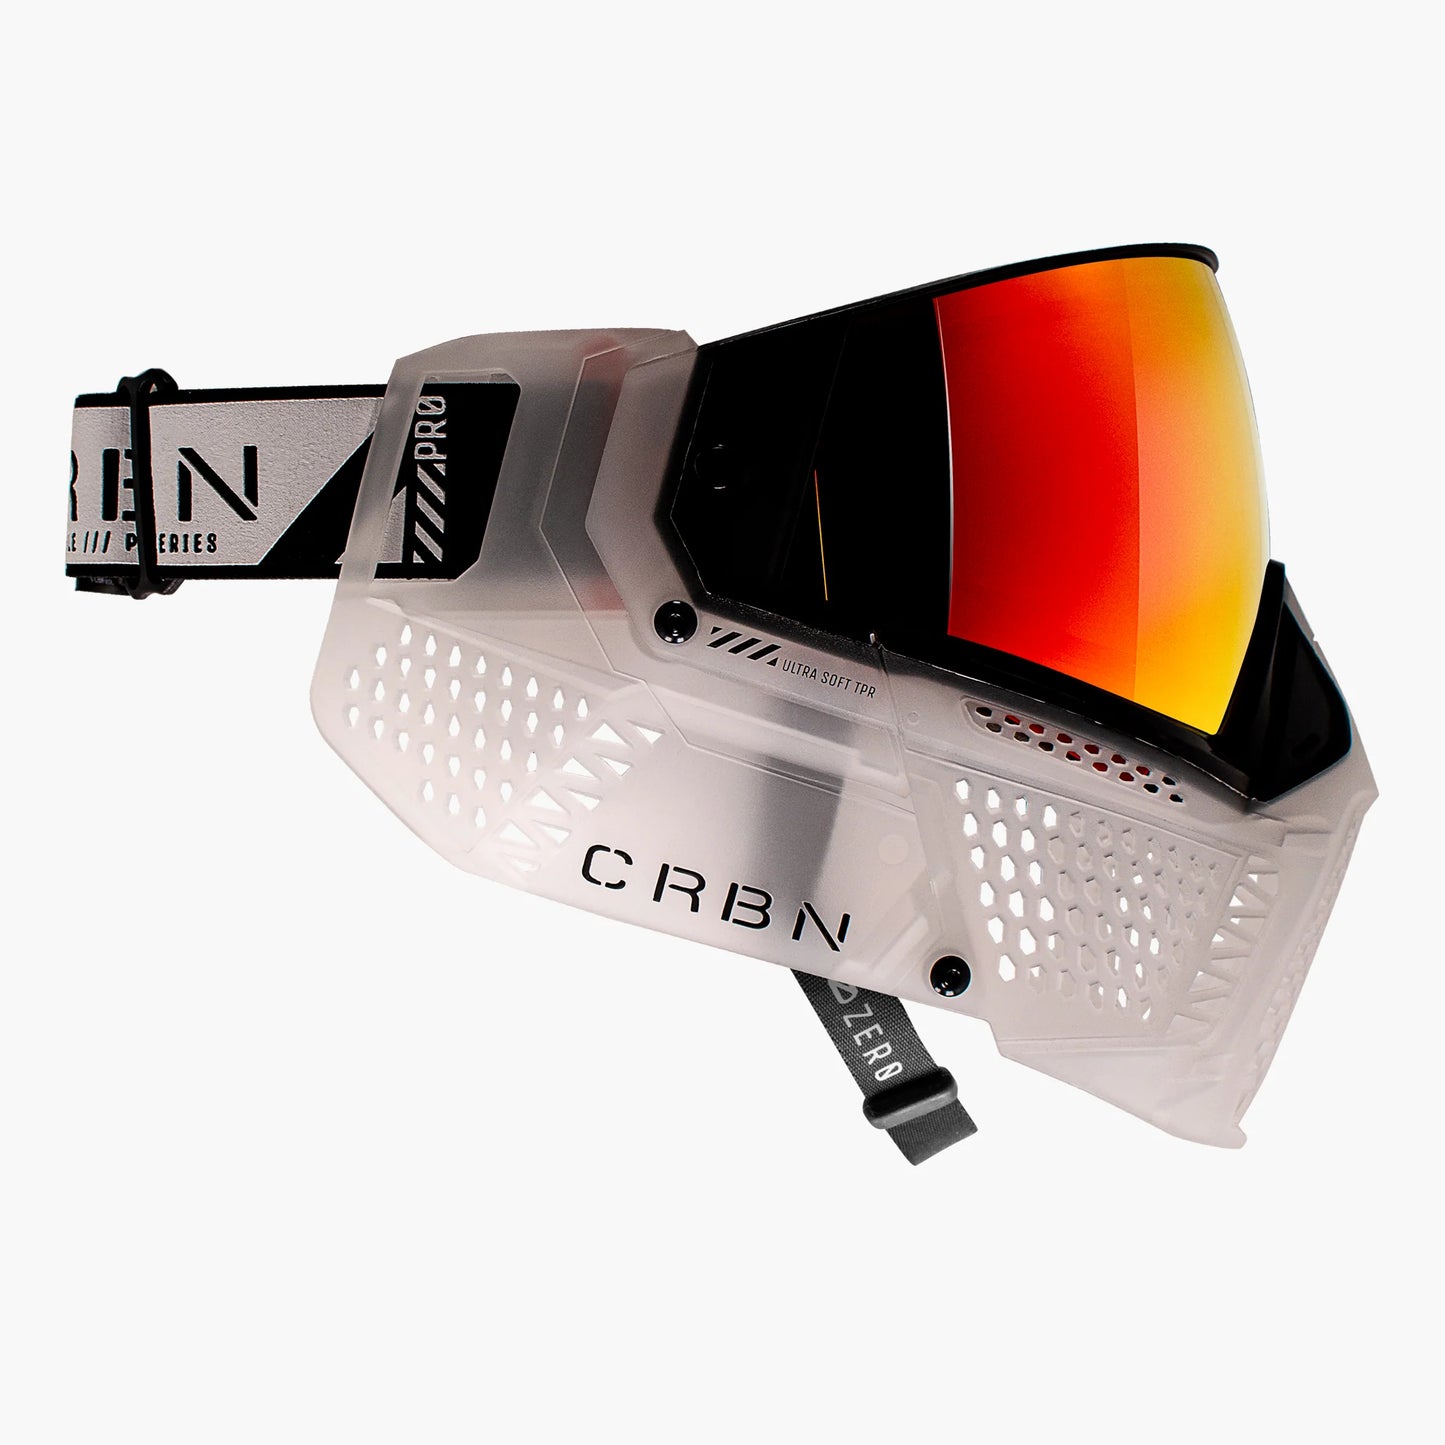 CRBN Zero Pro Goggle - Clear, Coverage: MORE